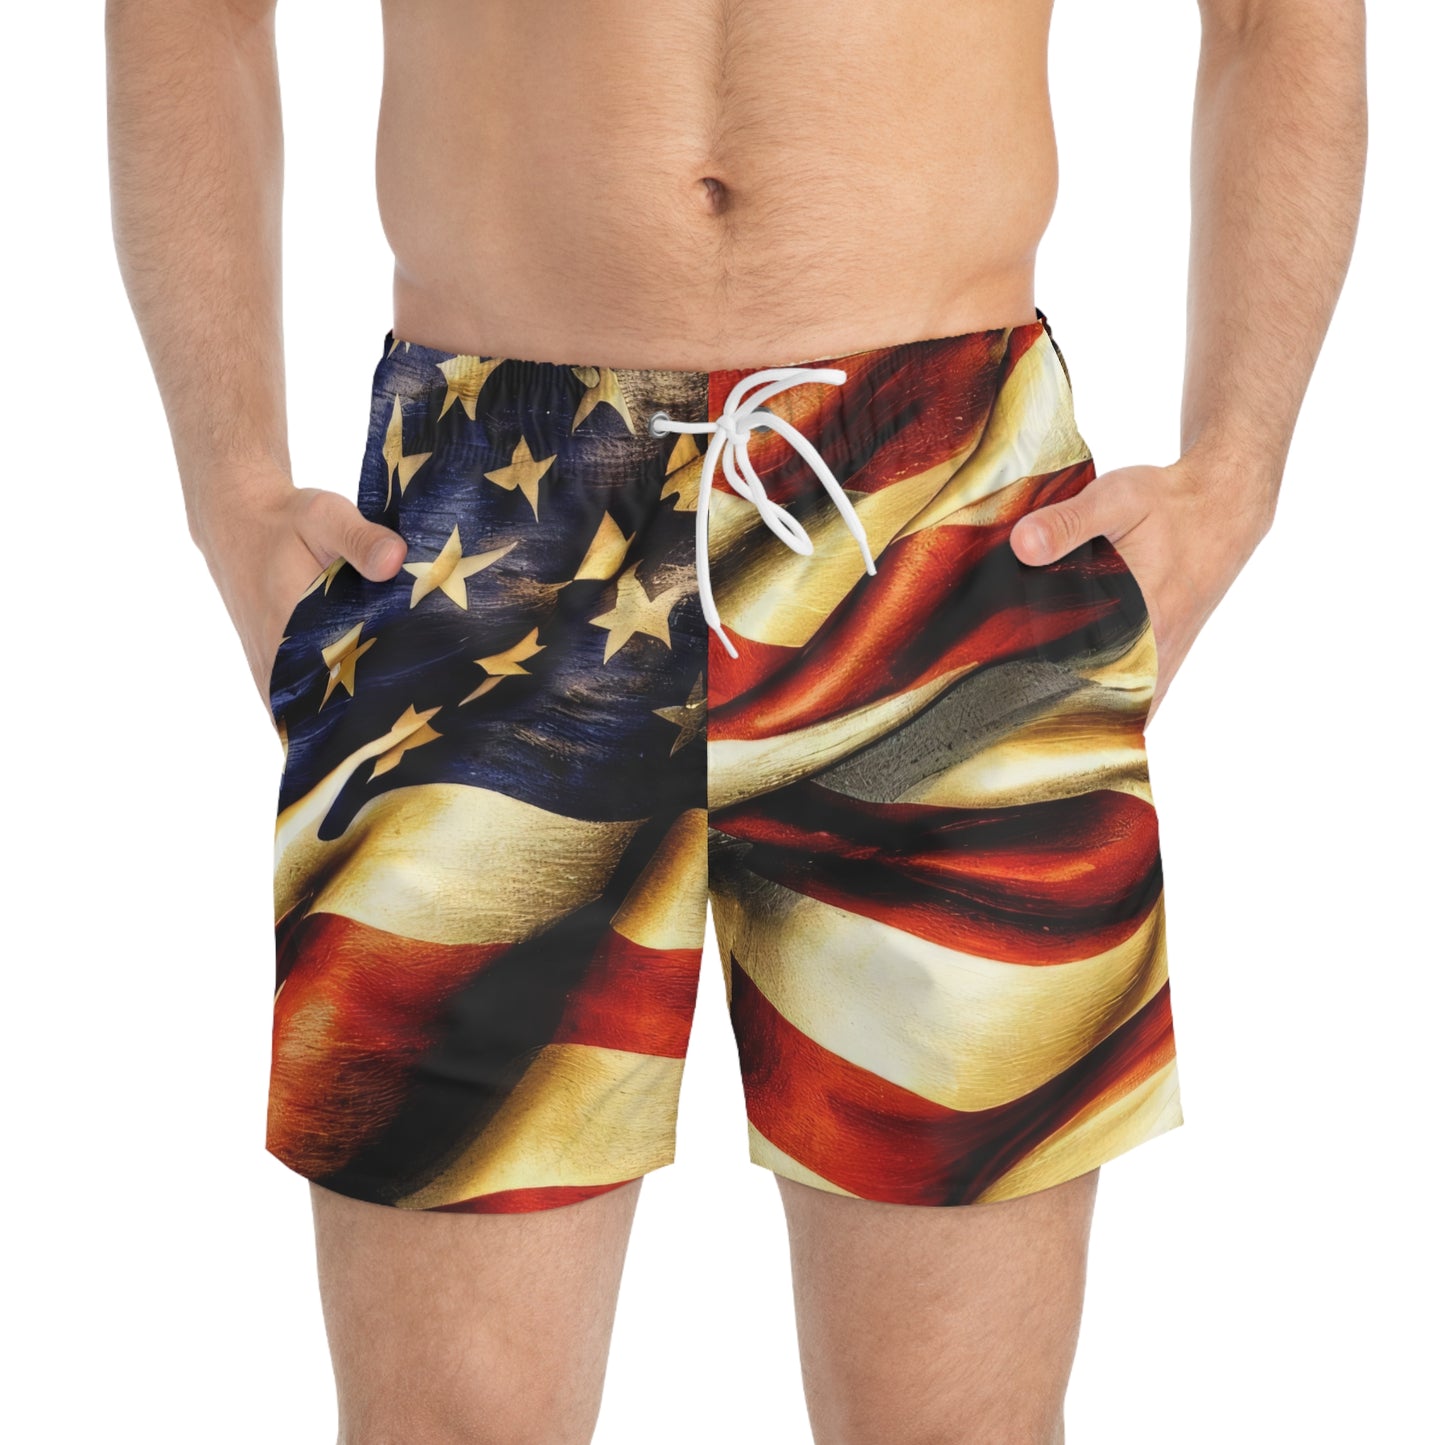 Vintage Rustic Fashion Mens Swim Trunks - American Flag Swim Shorts Mens